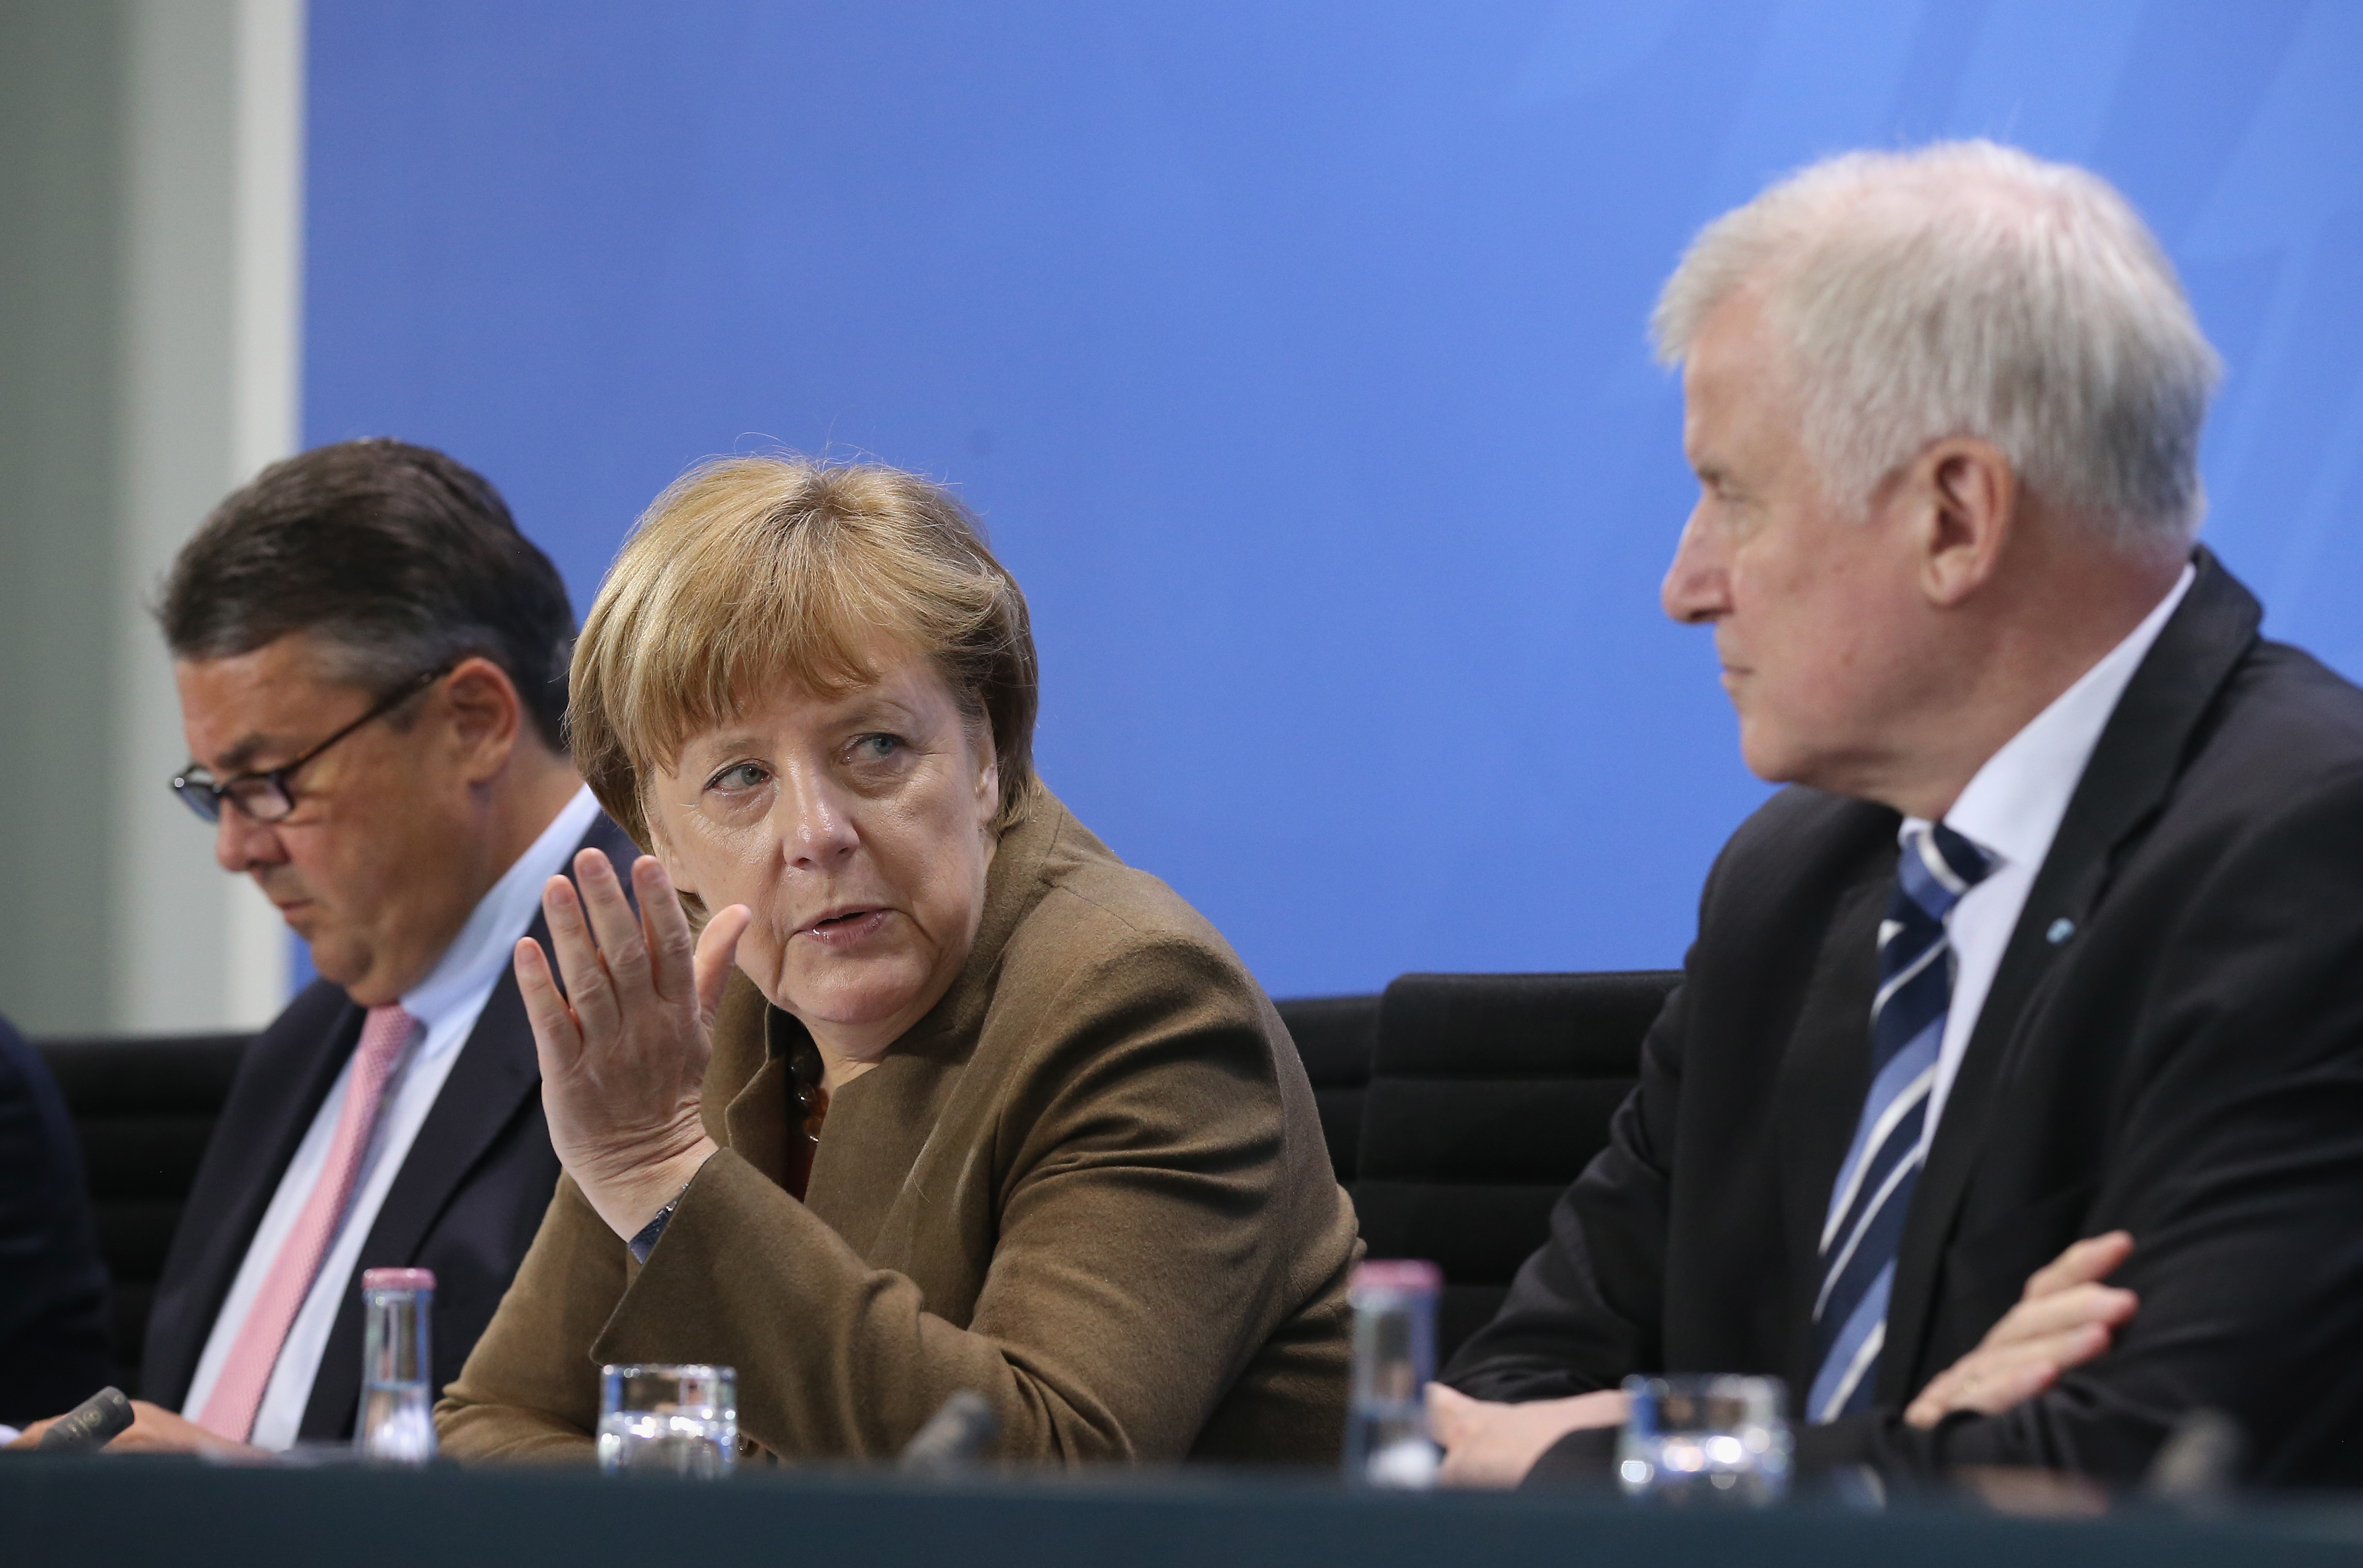 Rente darf kein Wahlthema werden: Merkel kritisiert Rentenkampagnen des DGB im Wahlkampf